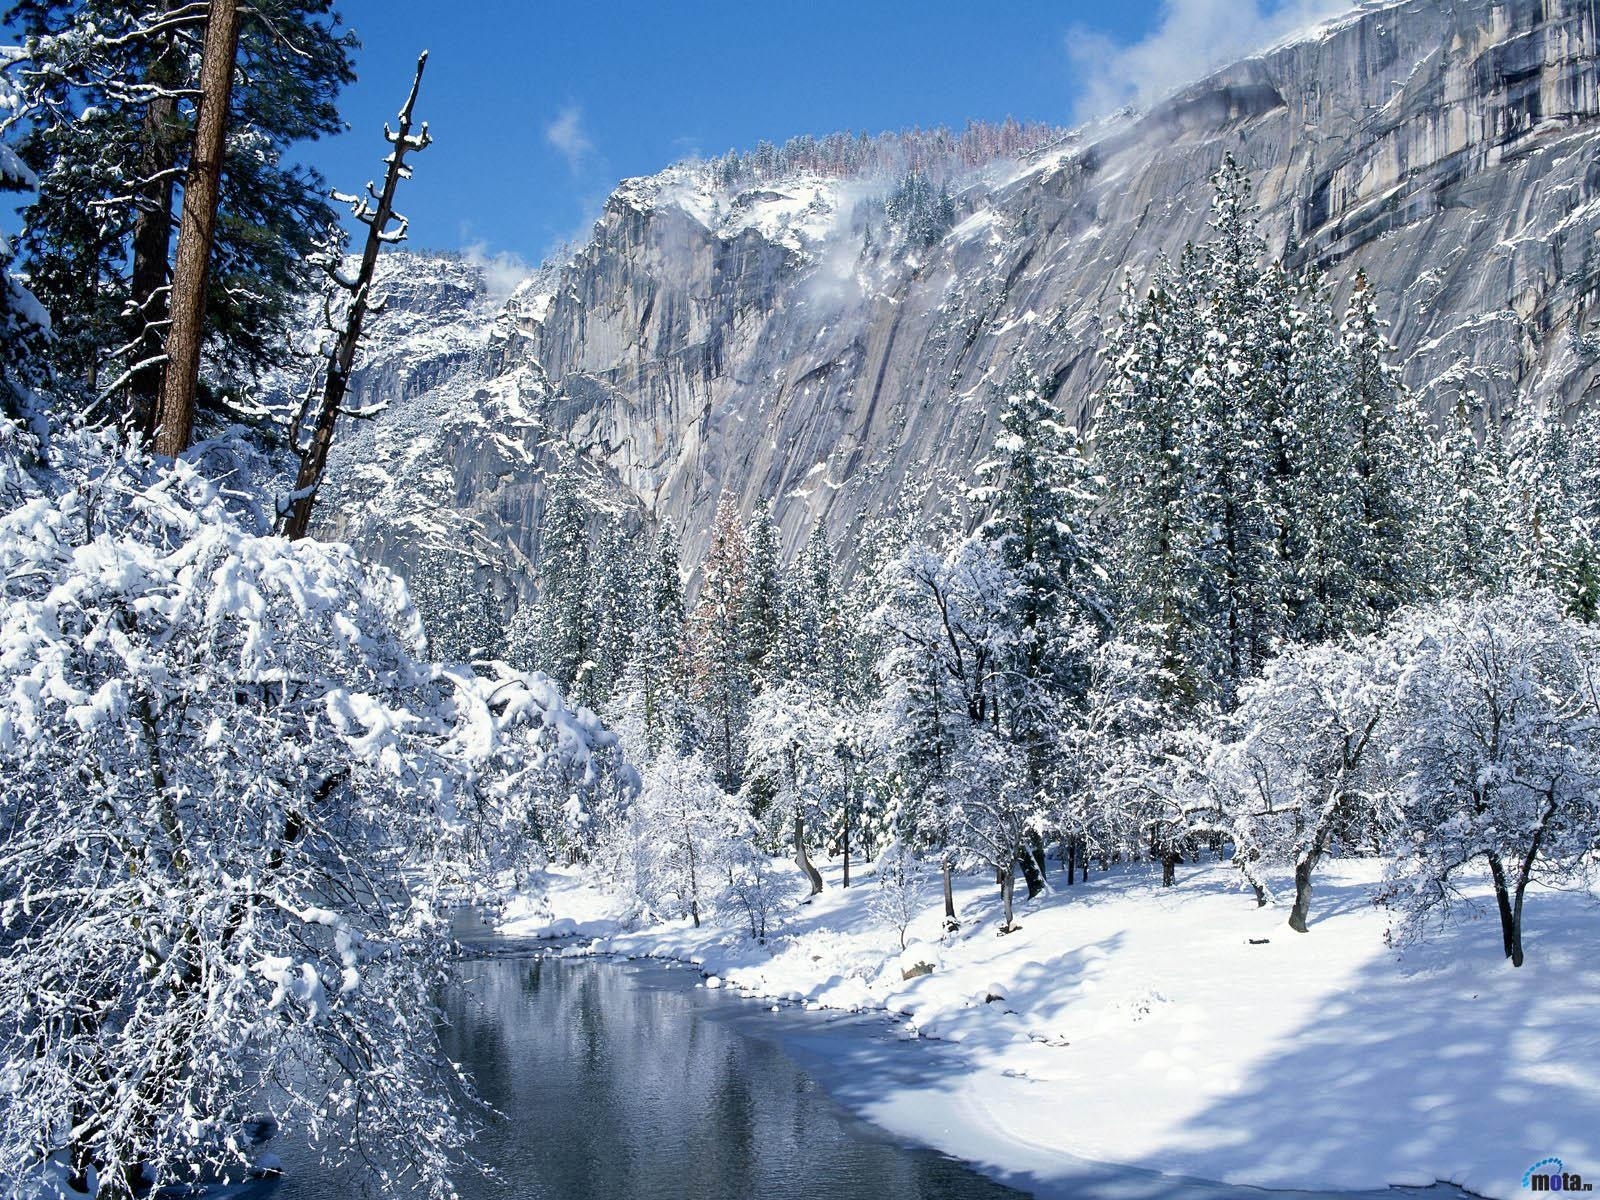 Скачать обои бесплатно Деревья, Река, Горы, Снег, Зима, Пейзаж картинка на рабочий стол ПК